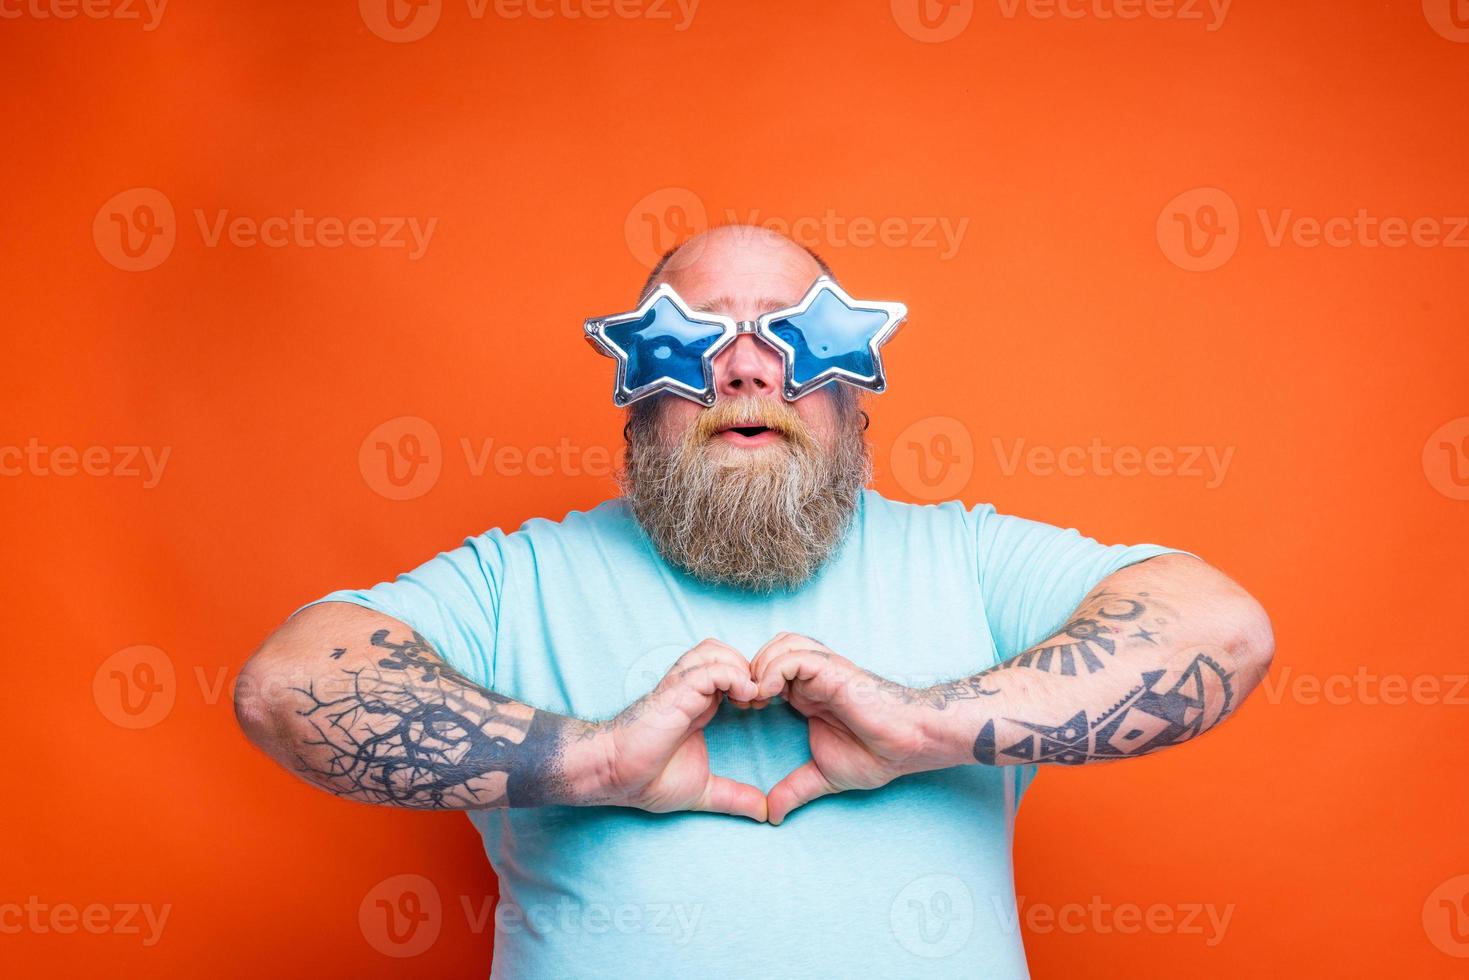 dik Mens met baard, tatoeages en zonnebril maakt hart vorm met handen foto